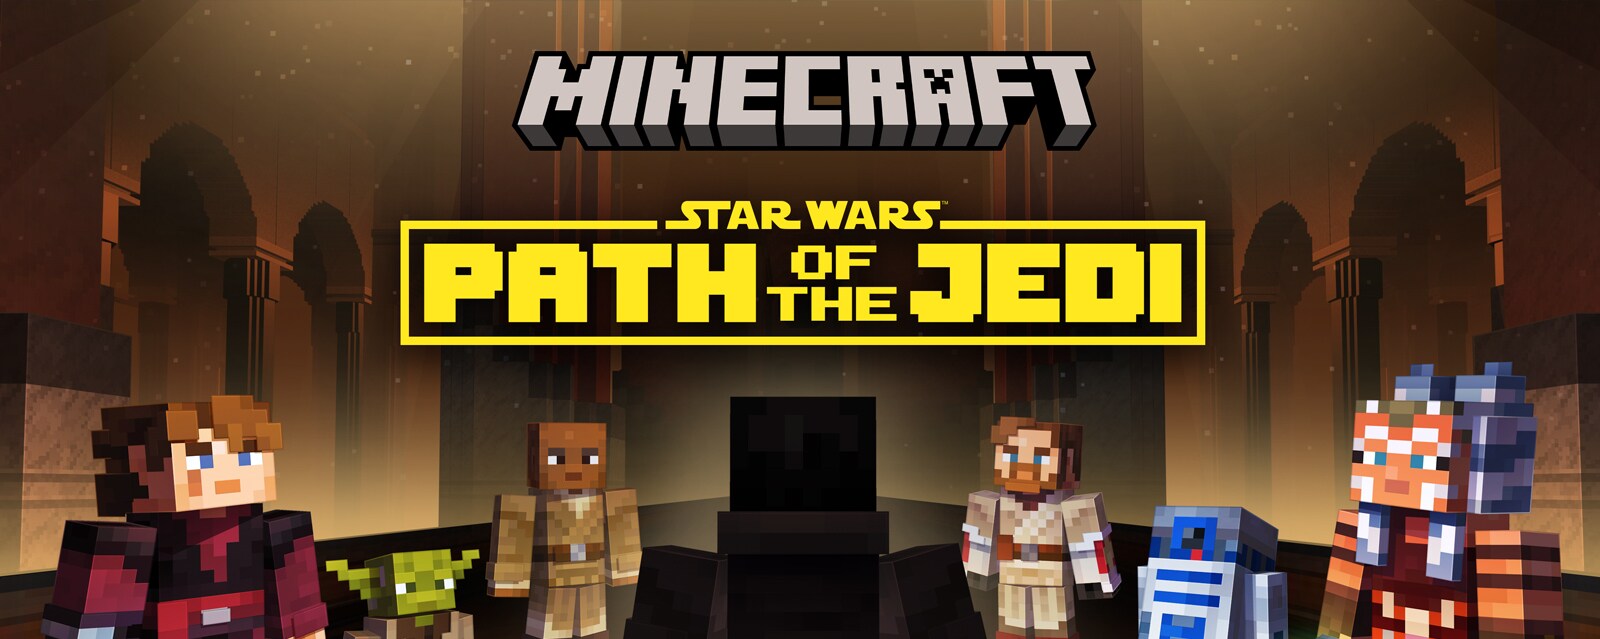 Minecraft Star Wars: Path of the Jedi DLC key art